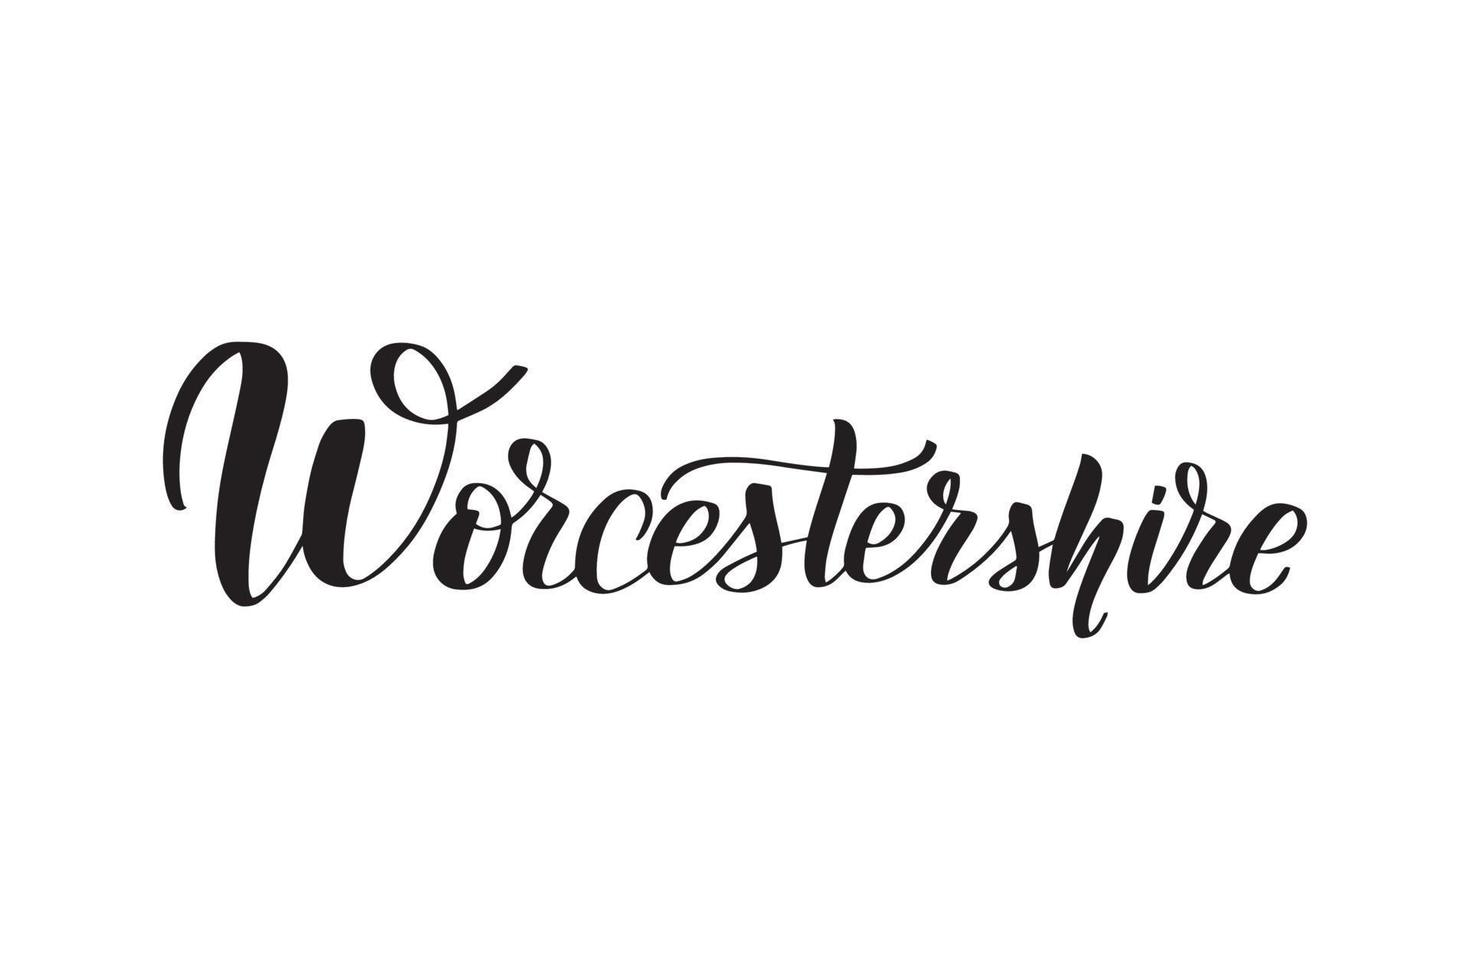 inspirerende handgeschreven borstel belettering Worcestershire. vector kalligrafie illustratie geïsoleerd op een witte achtergrond. typografie voor banners, badges, ansichtkaarten, tshirts, prenten, posters.